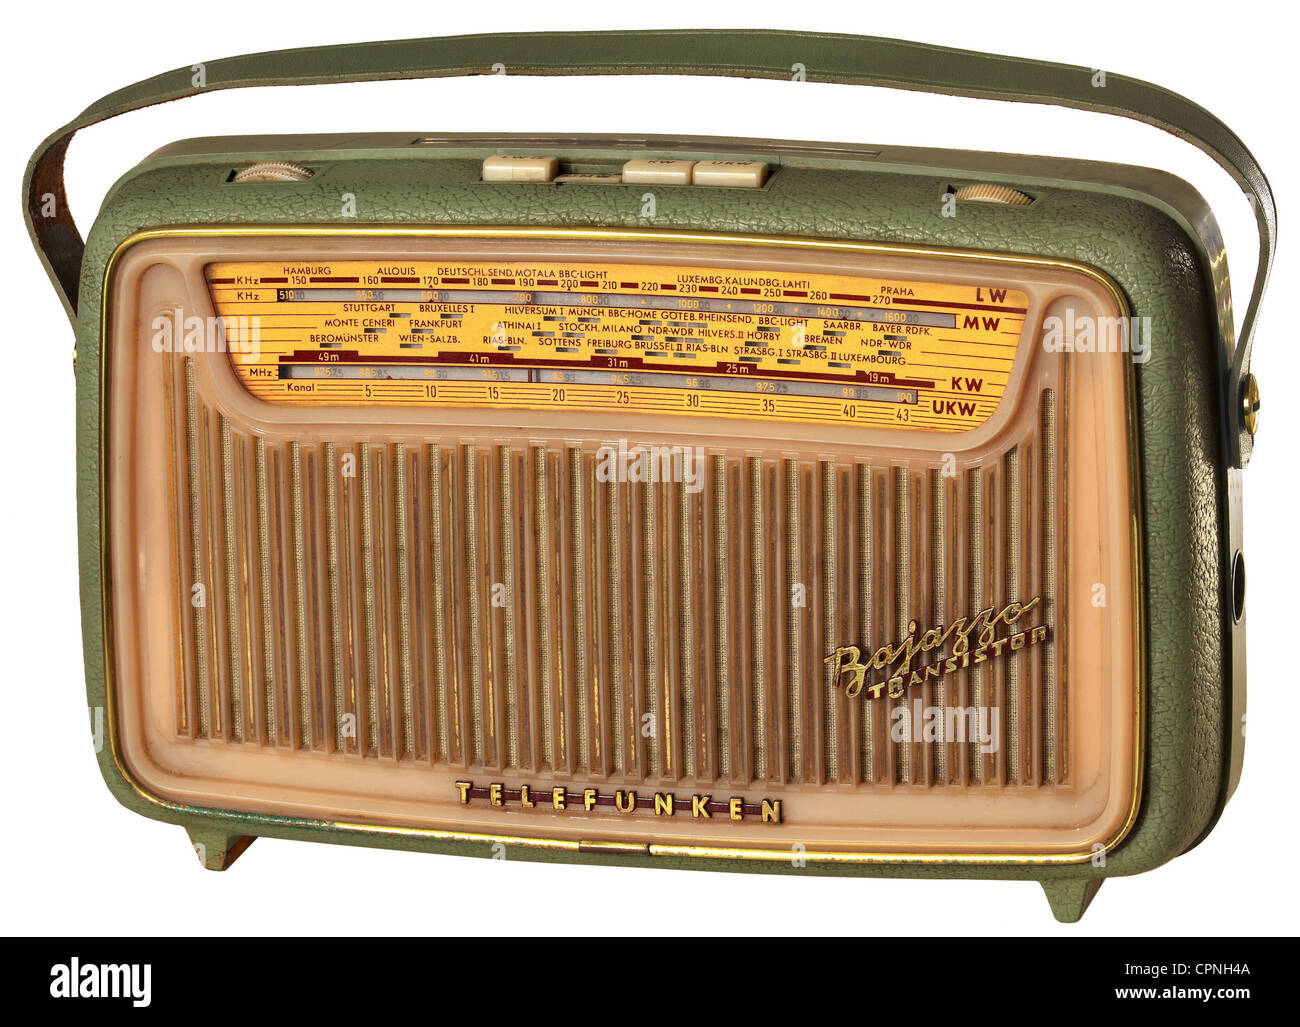 Radio, Telefunken Bajazzo Transistor, en ascona verde, peso, 8 kilogramos con baterías, caja de poliestireno, en ese momento precio original: 299 DM, Alemania, 1960, Derechos adicionales-Clearences-no disponible Foto de stock